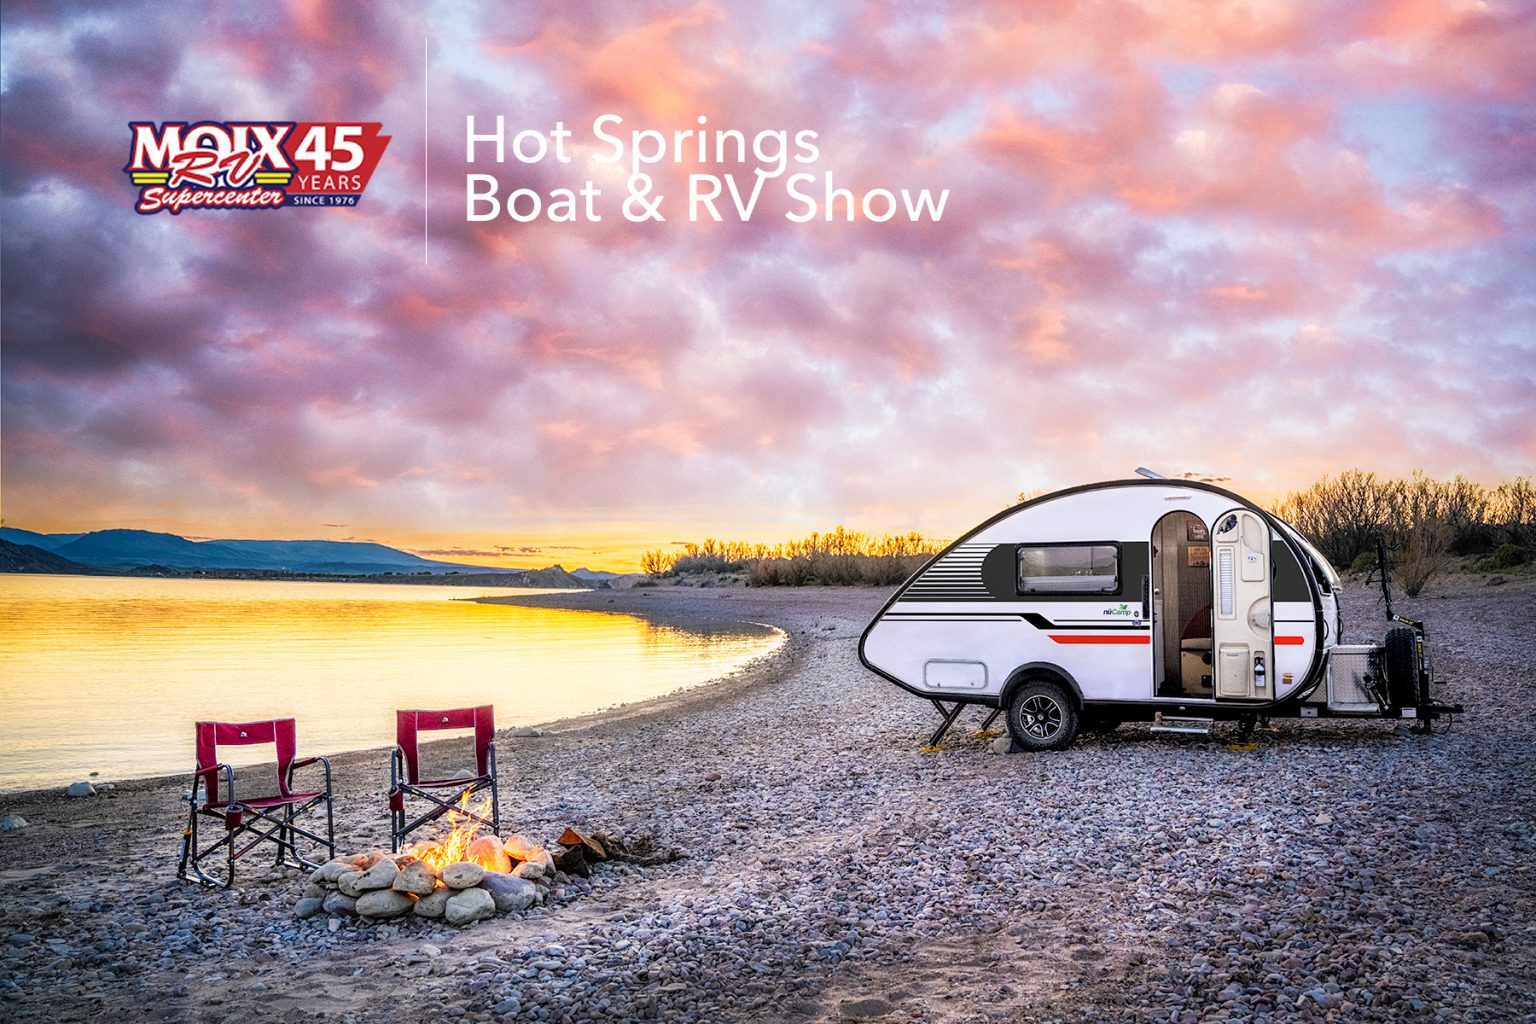 Hot Springs Boat & RV Show nuCamp RV